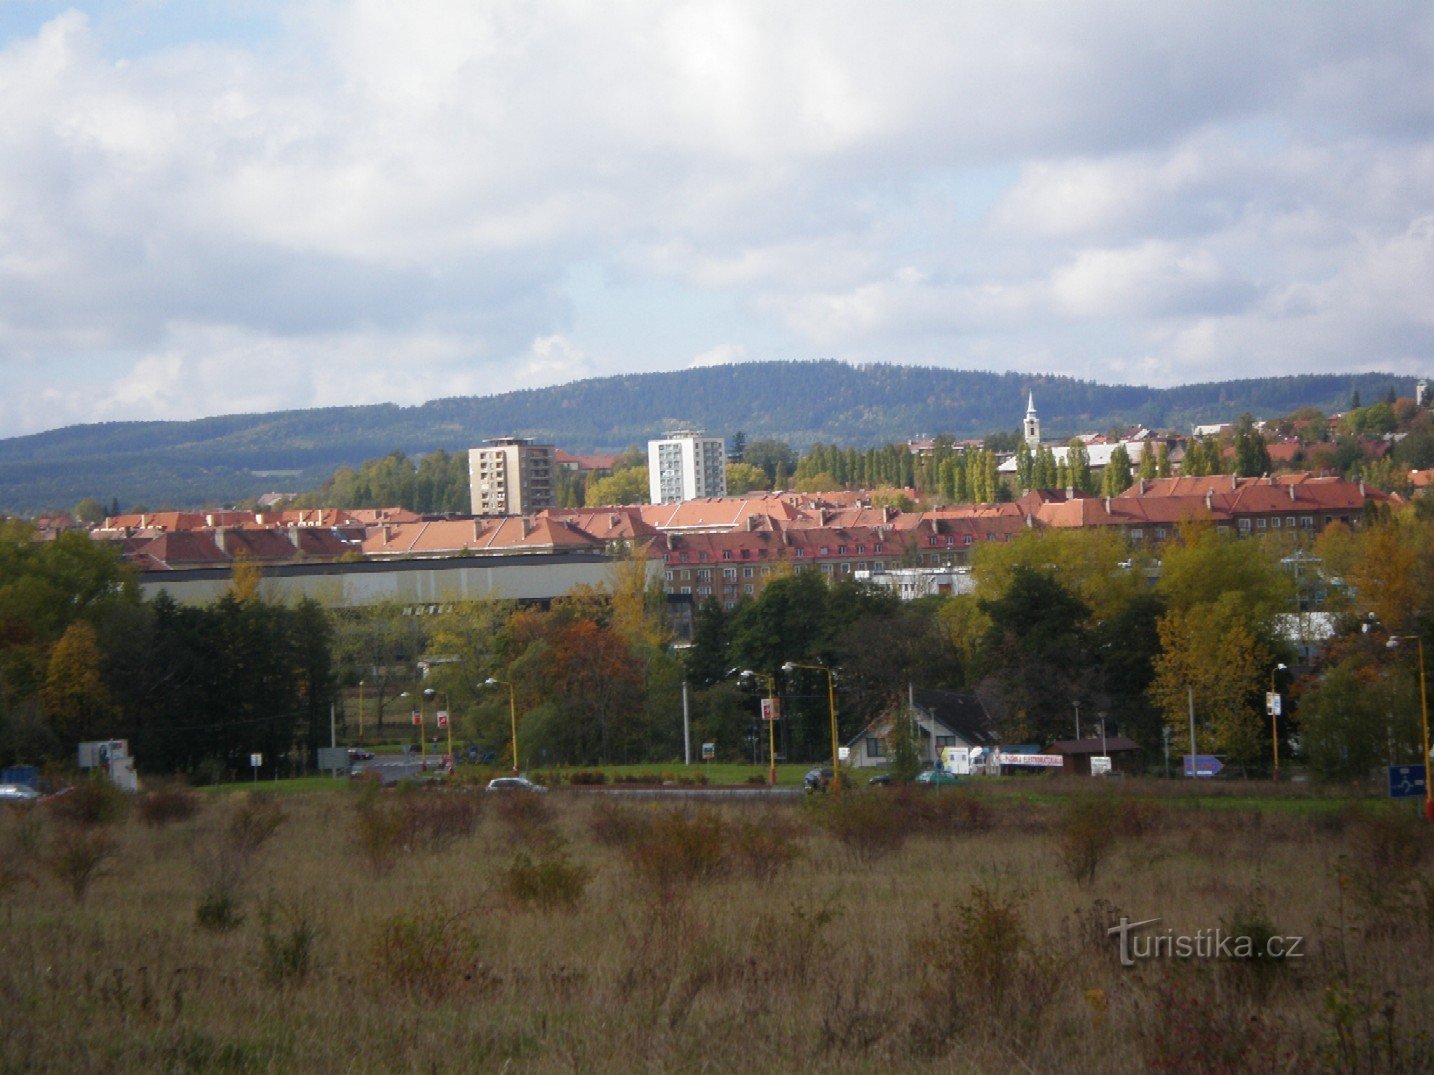 Mont Třemošná au-dessus de Příbramí